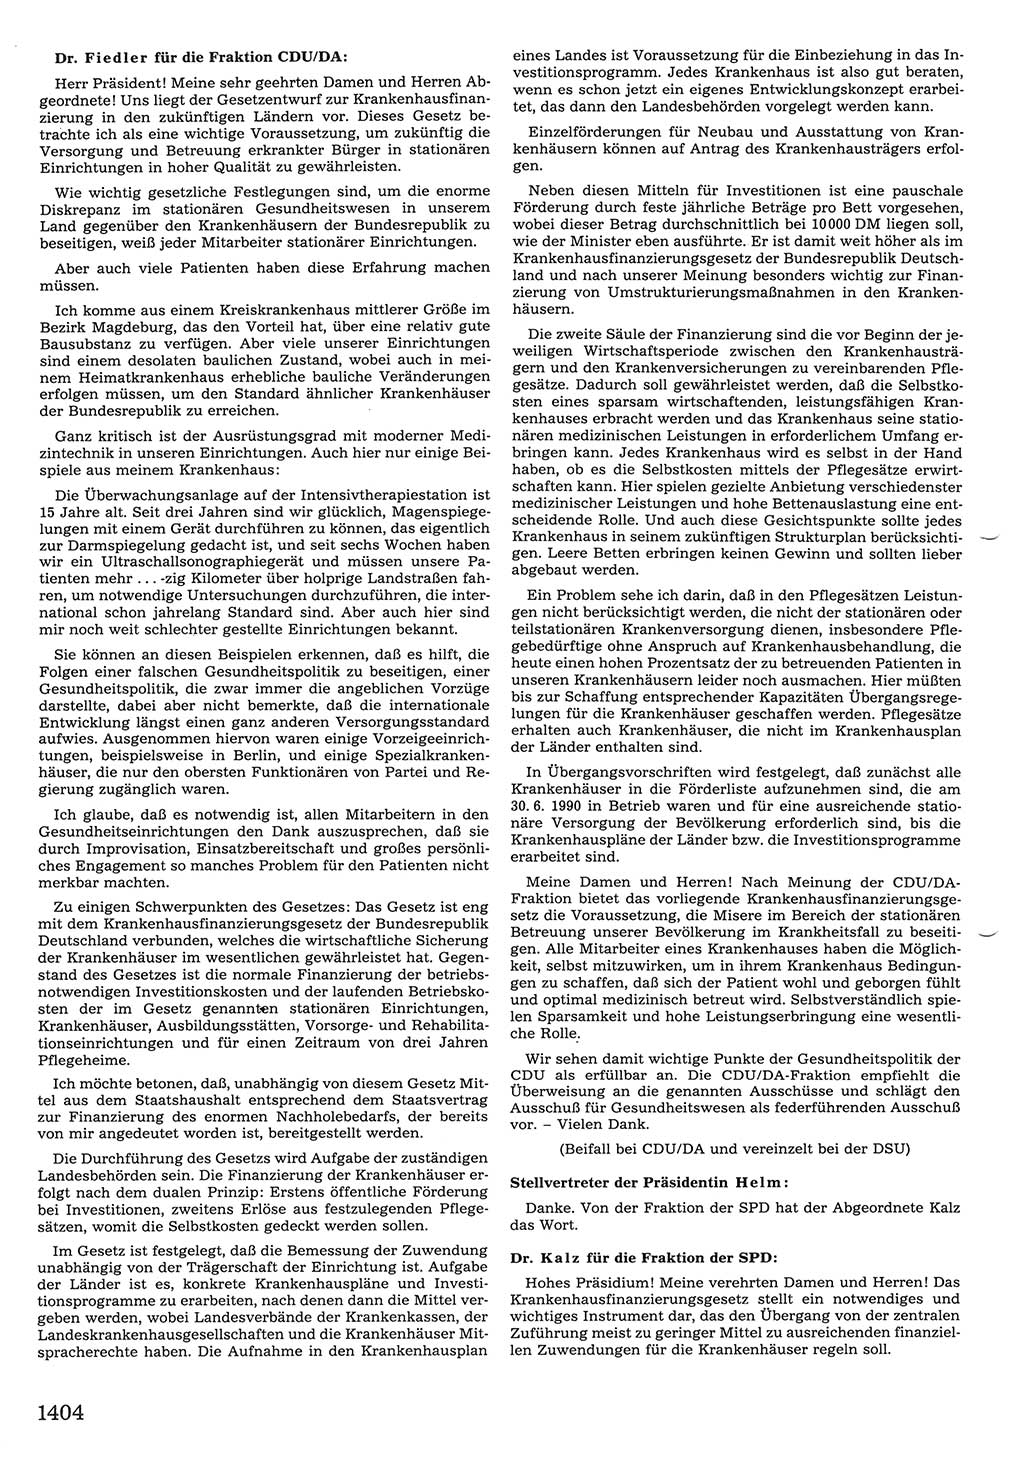 Tagungen der Volkskammer (VK) der Deutschen Demokratischen Republik (DDR), 10. Wahlperiode 1990, Seite 1404 (VK. DDR 10. WP. 1990, Prot. Tg. 1-38, 5.4.-2.10.1990, S. 1404)